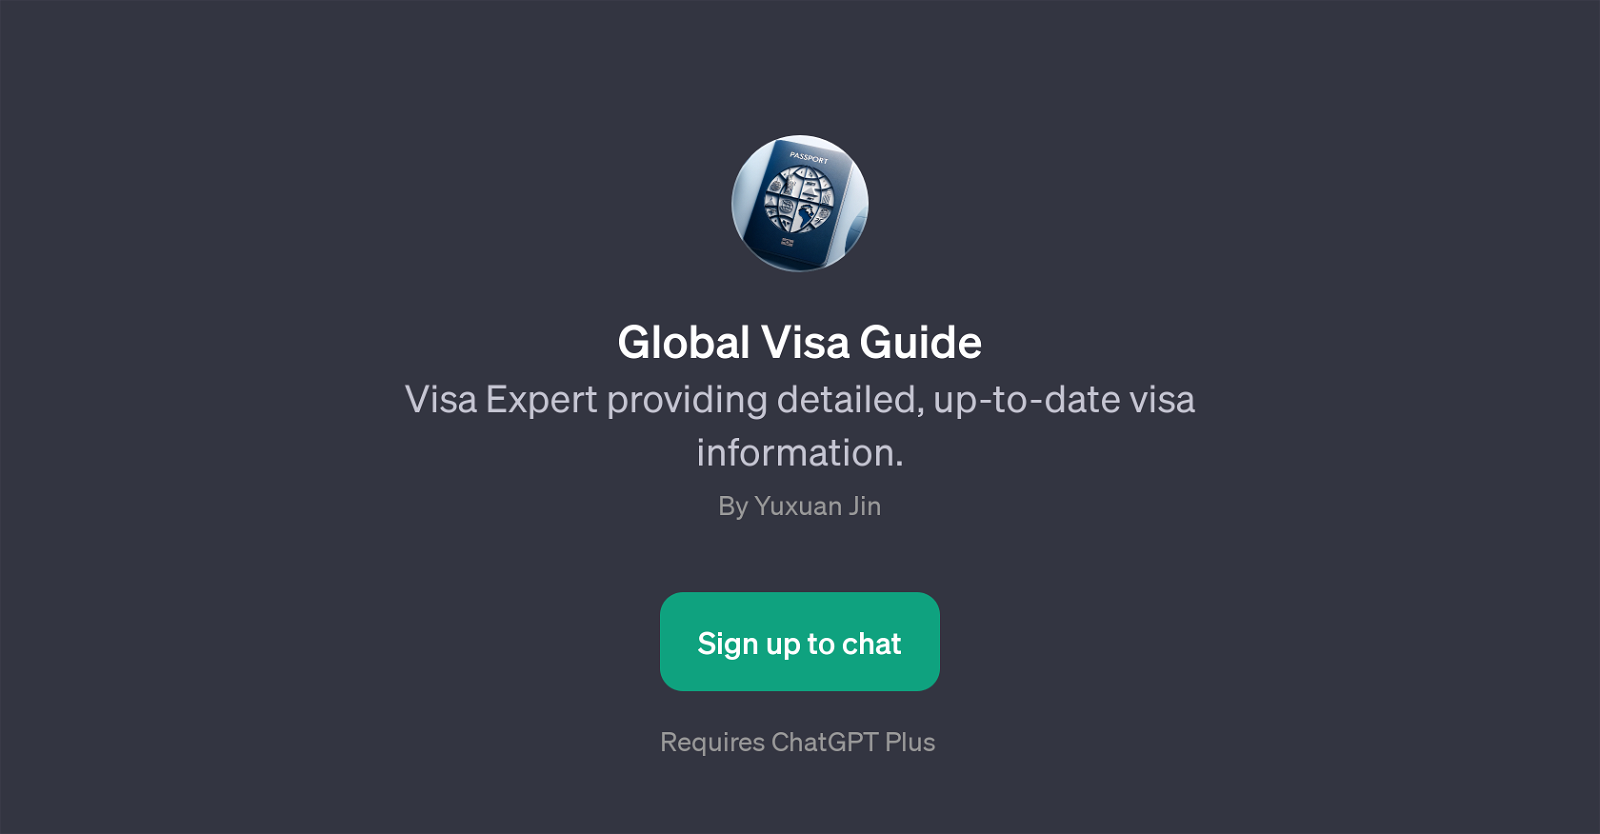 Global Visa Guide website